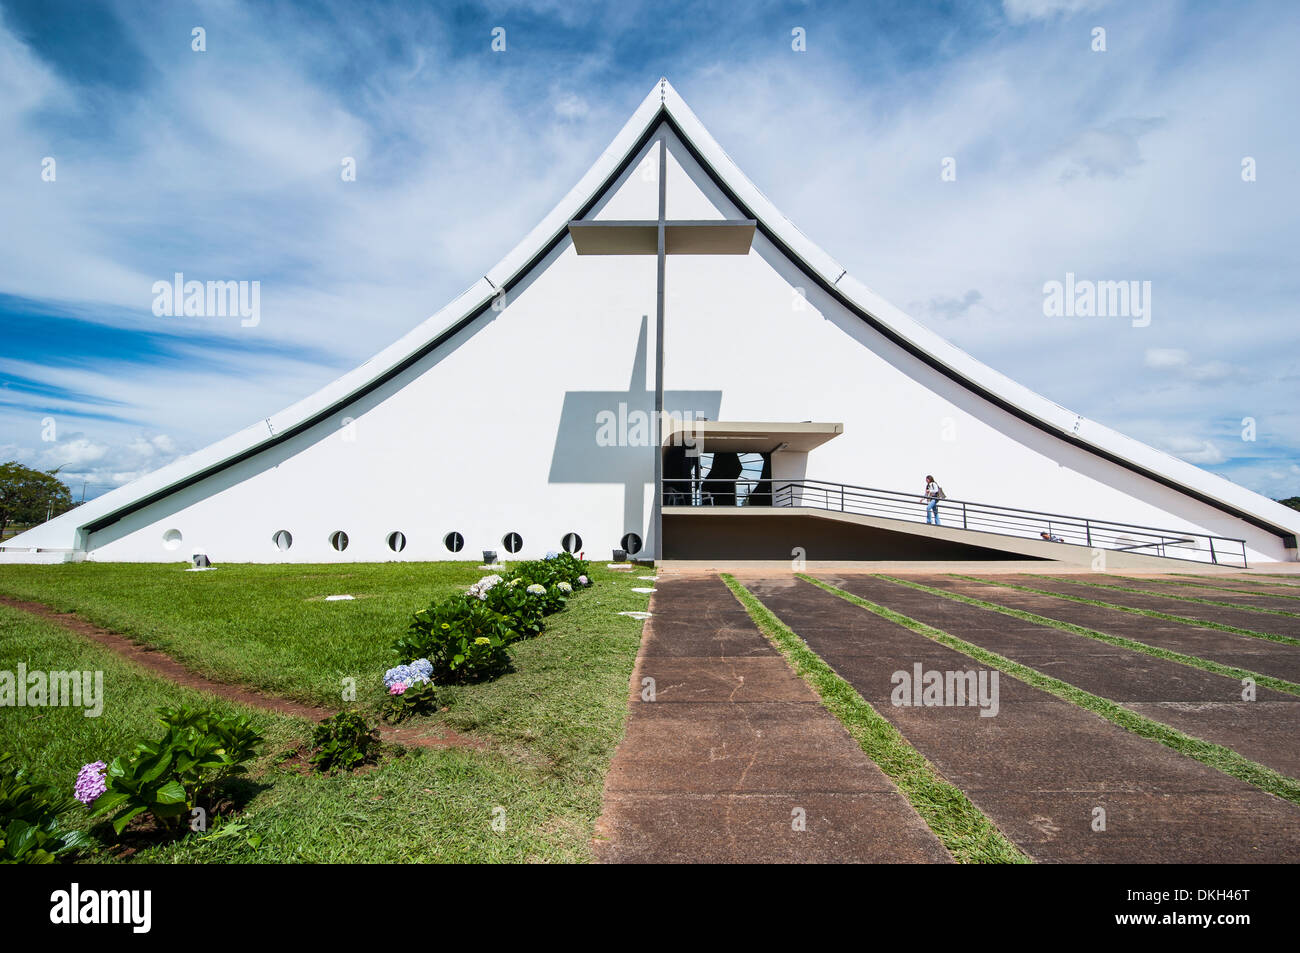 Military church in Brasilia, Brazil, South America Stock Photo